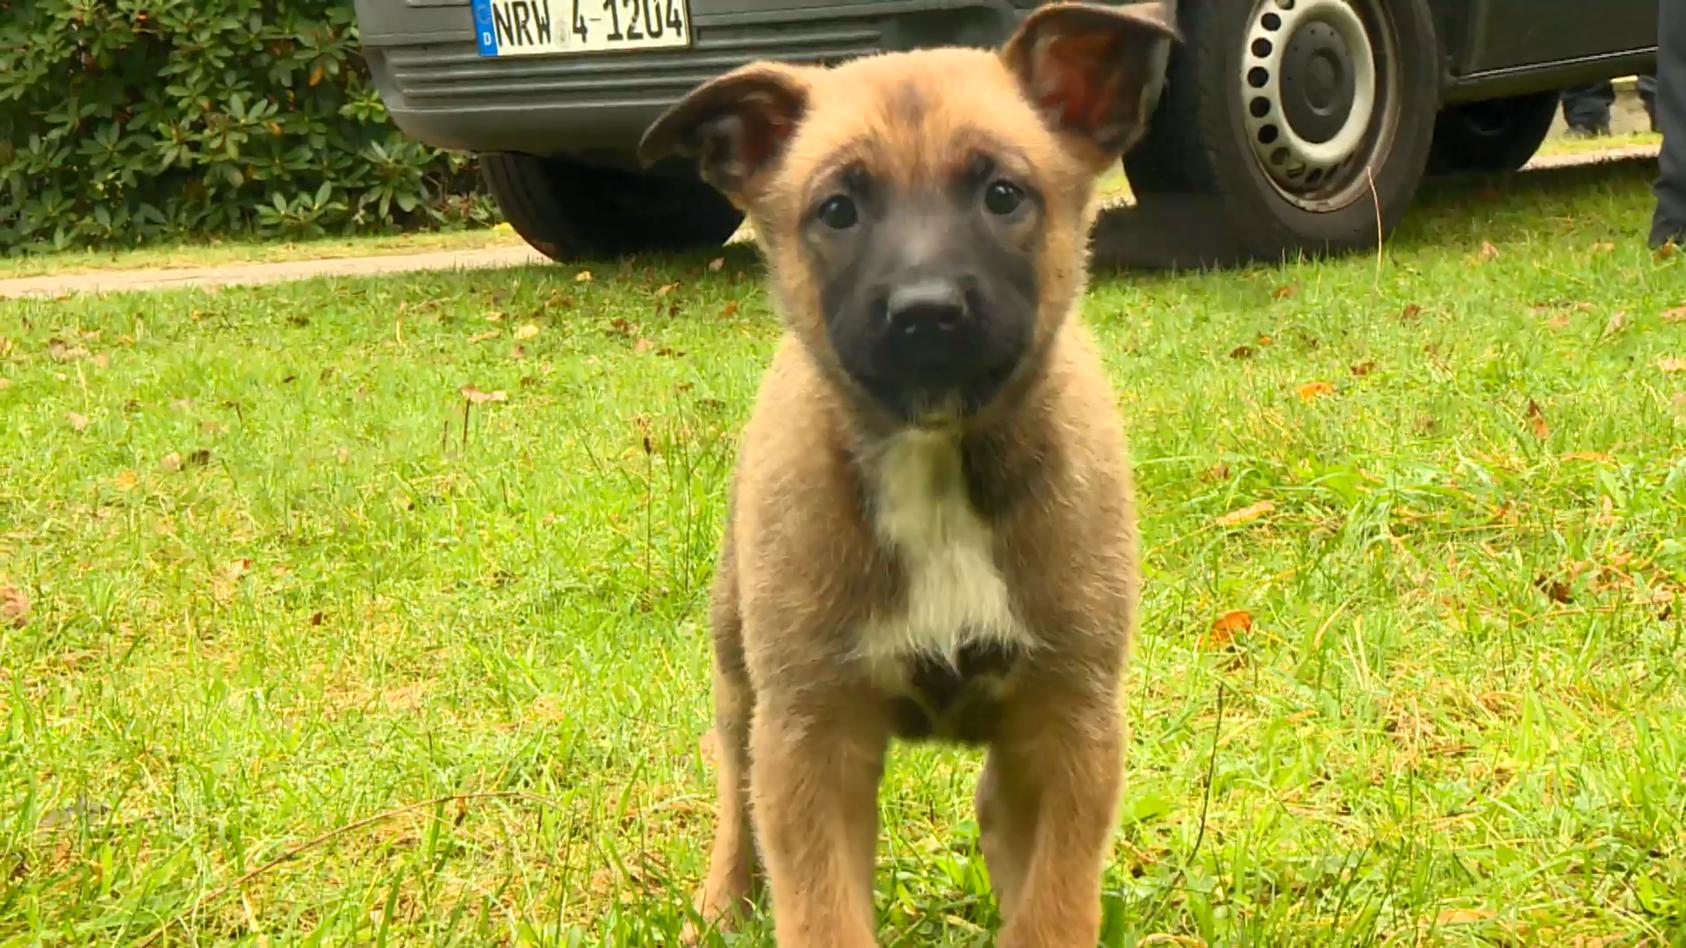 Tierischer Nachwuchs für Polizei Schutzhunde